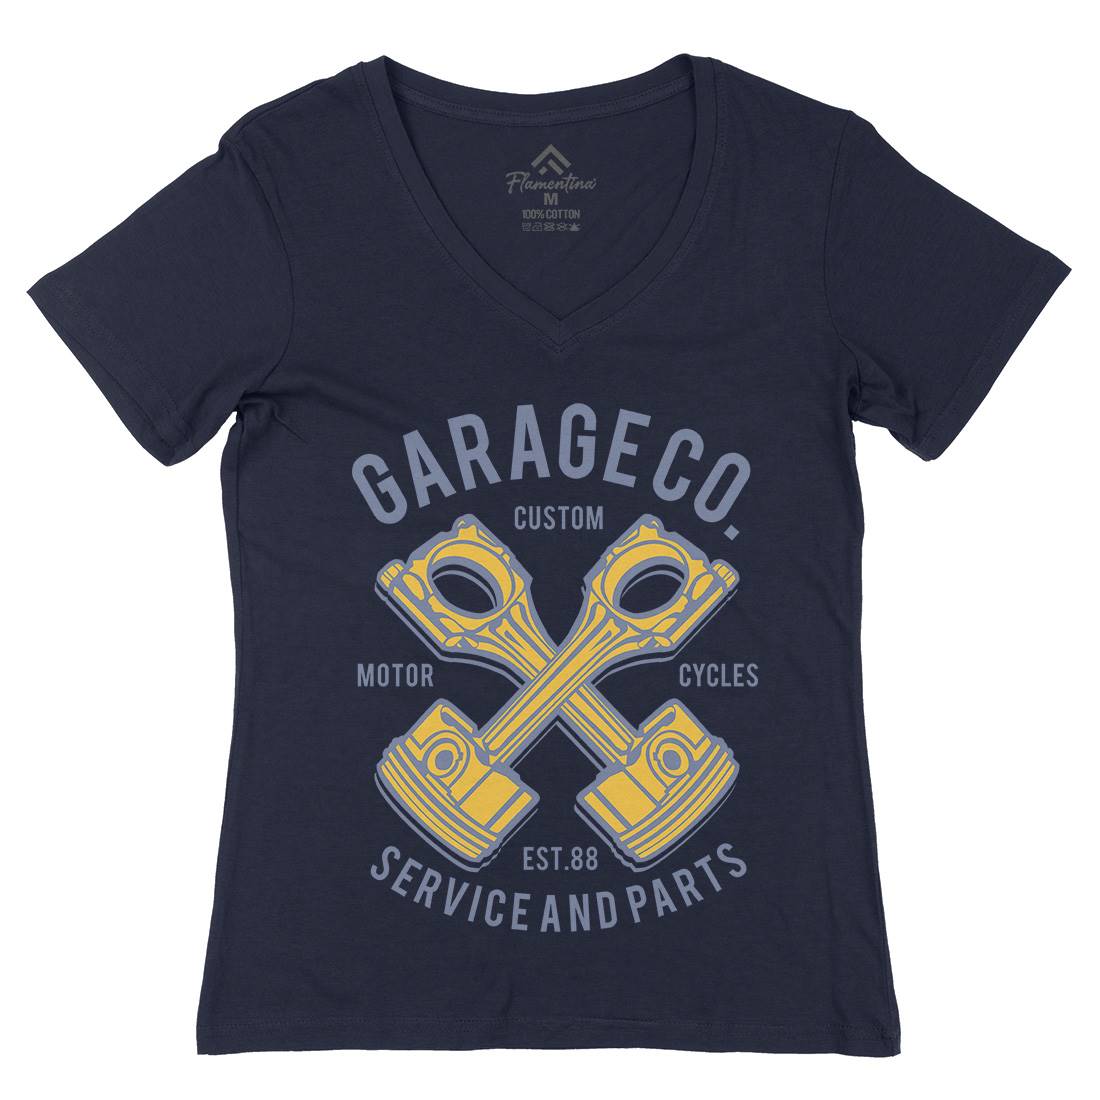 Garage Co Womens Organic V-Neck T-Shirt Cars B216